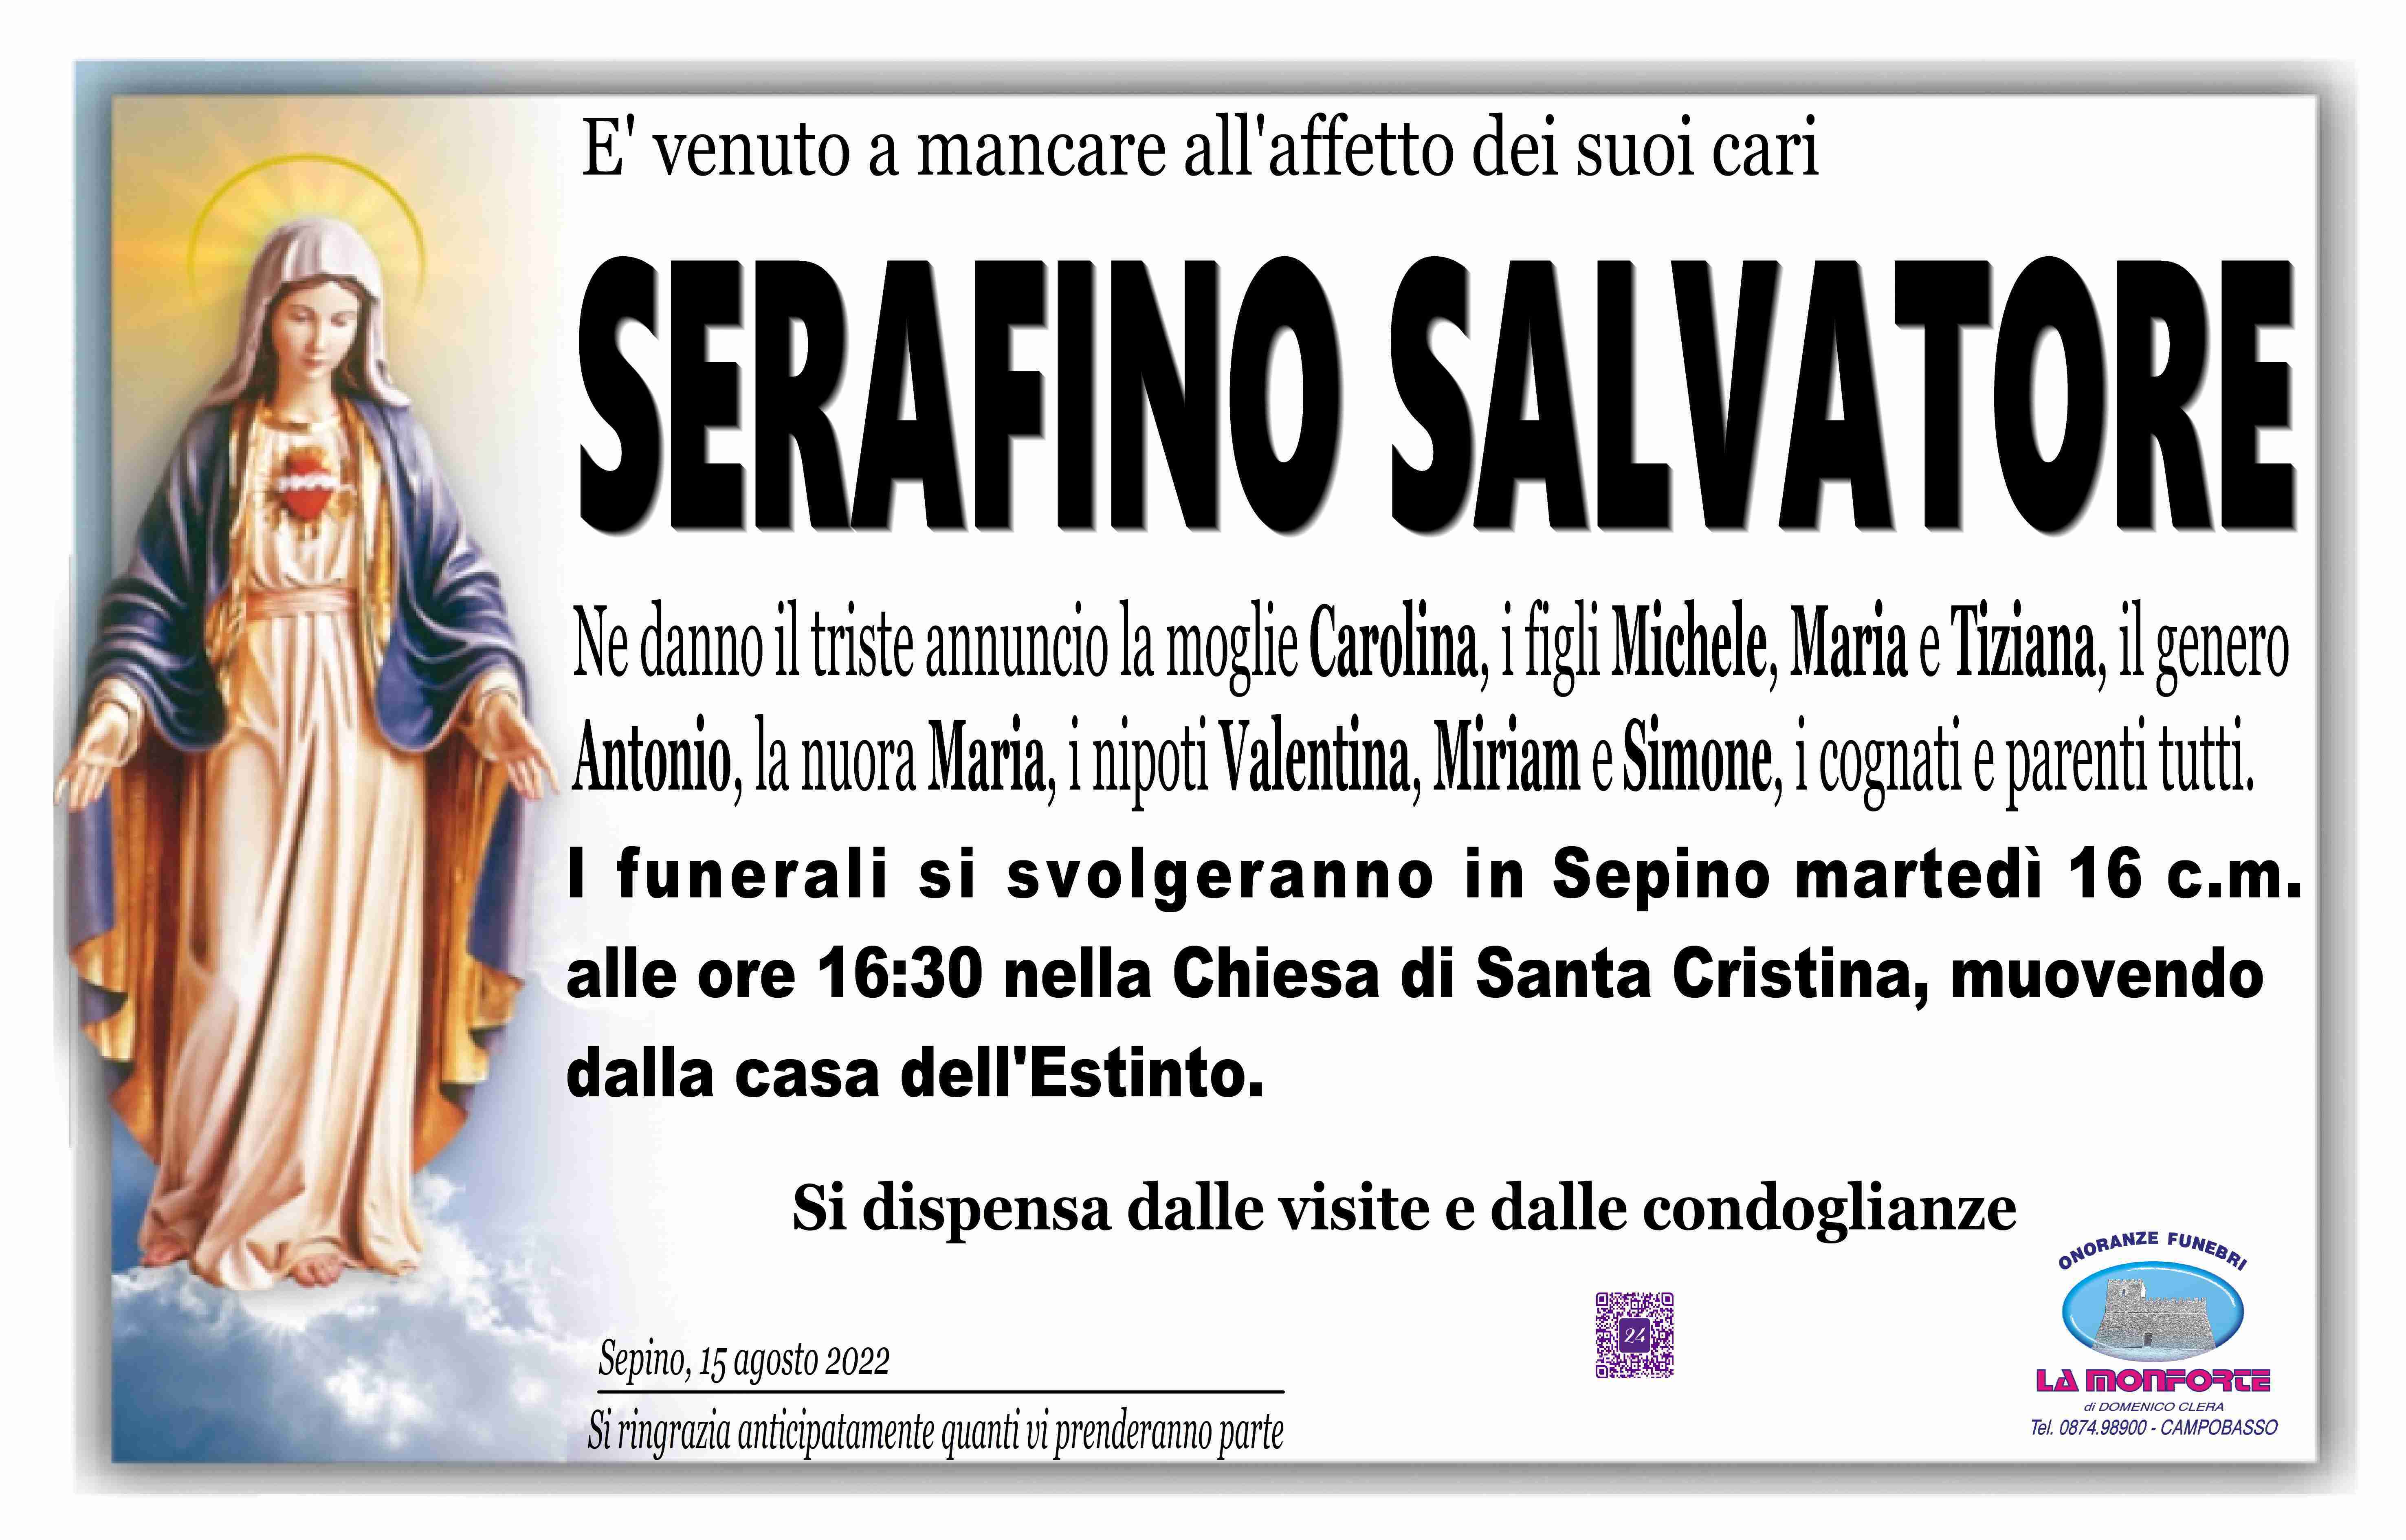 Serafino Salvatore